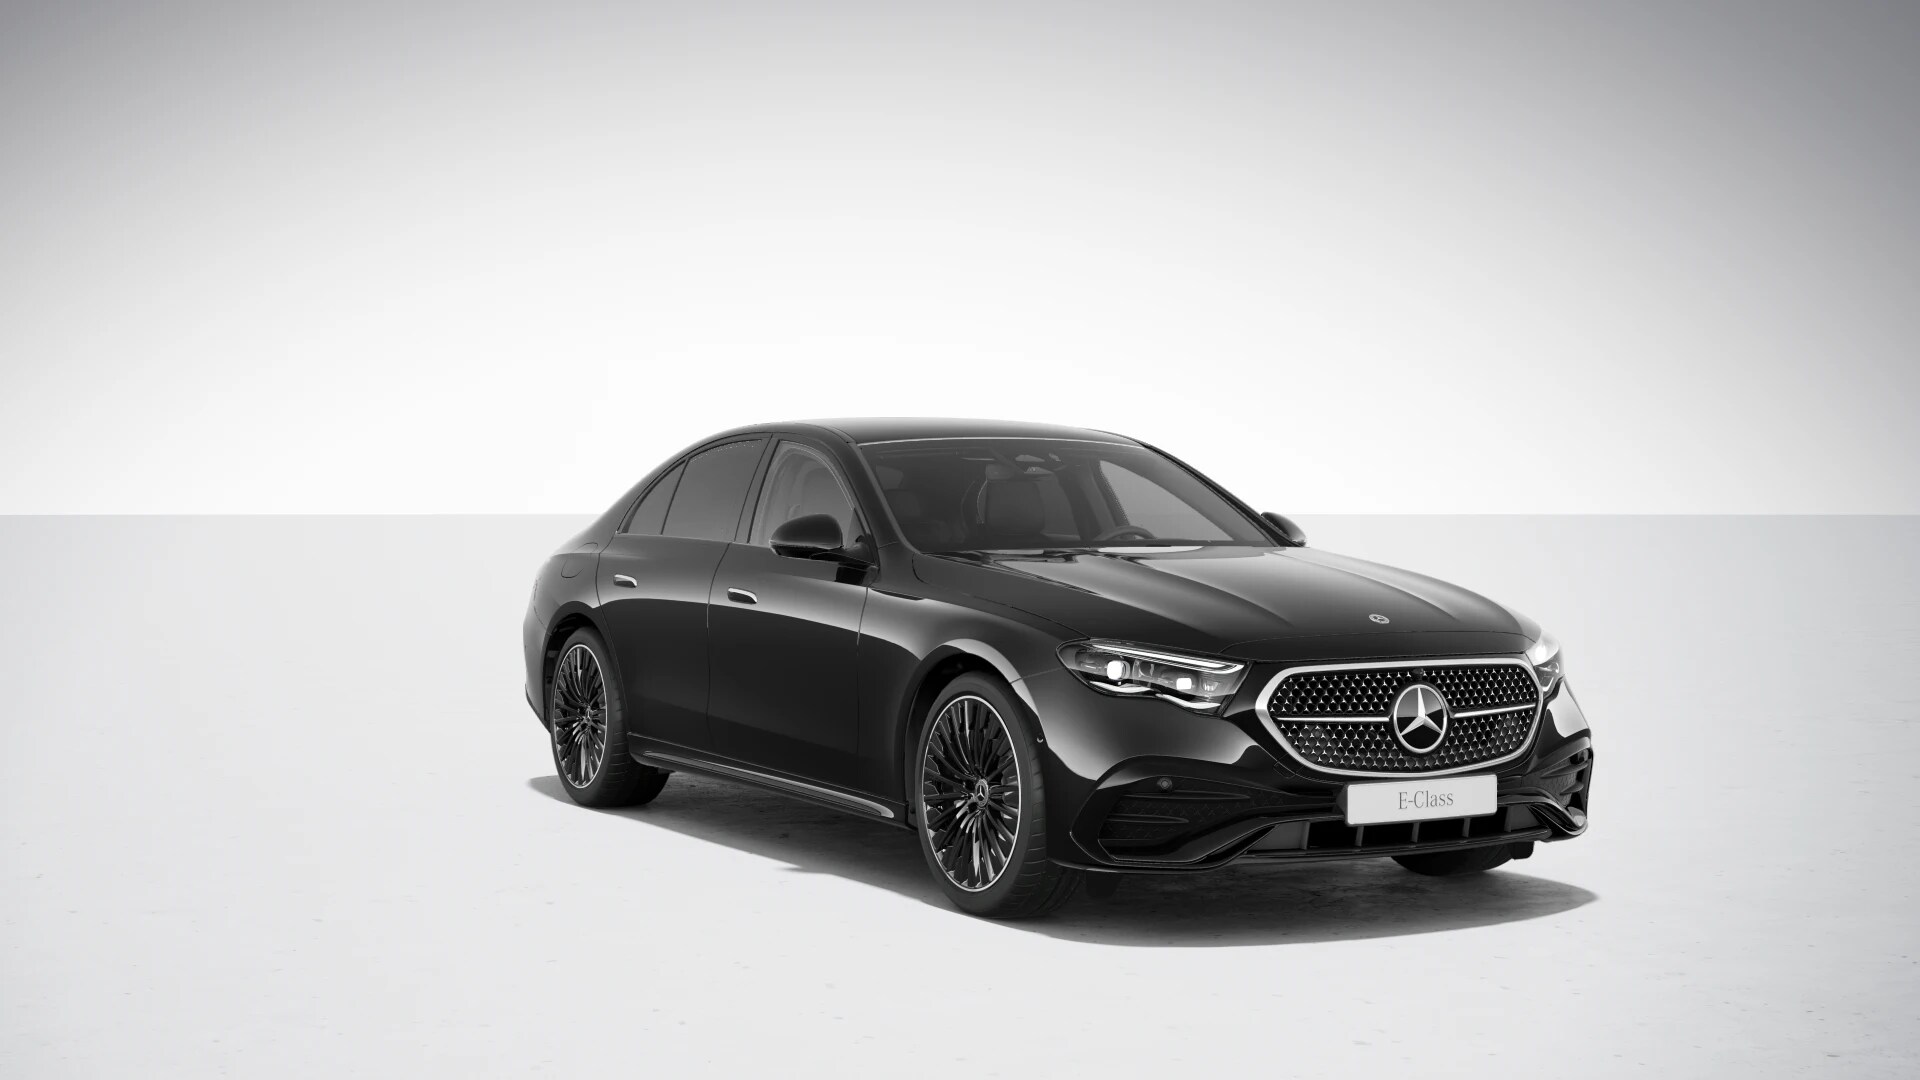 Mercedes E sedan 200 9G-tronic AMG | nový model | byznys benzínový sedan | nové auto ve výrobě | luxusní digitální interiér | nejmodernější technologie | nové auto ve výrobě | nákup online | AUTOiBUY.COM